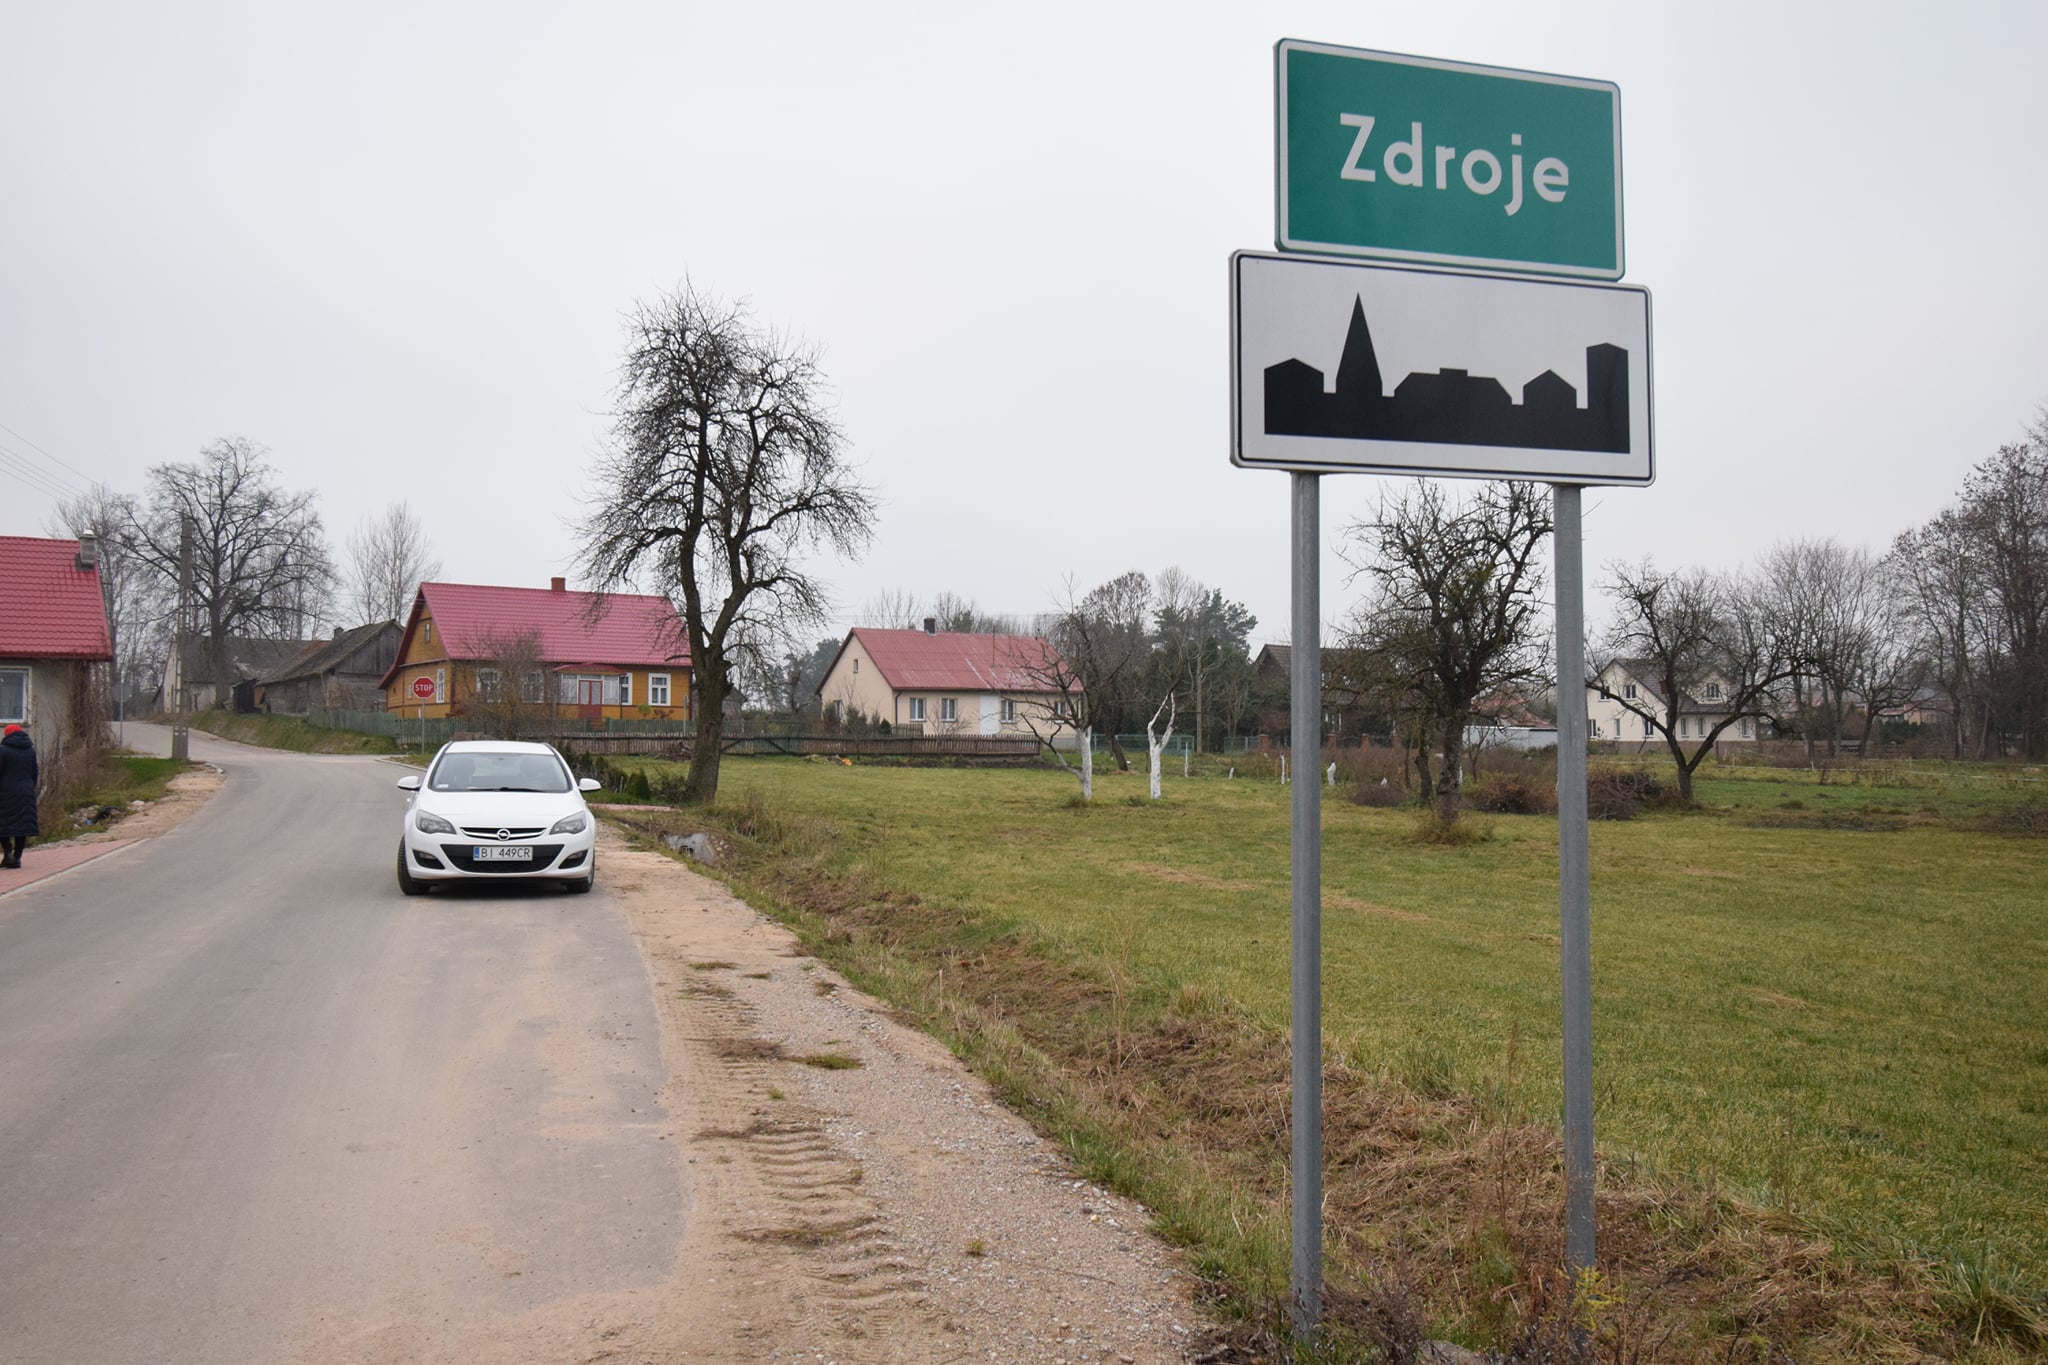 Oficjalne otwarcie przebudowanego skrzyżowania we wsi Zdroje